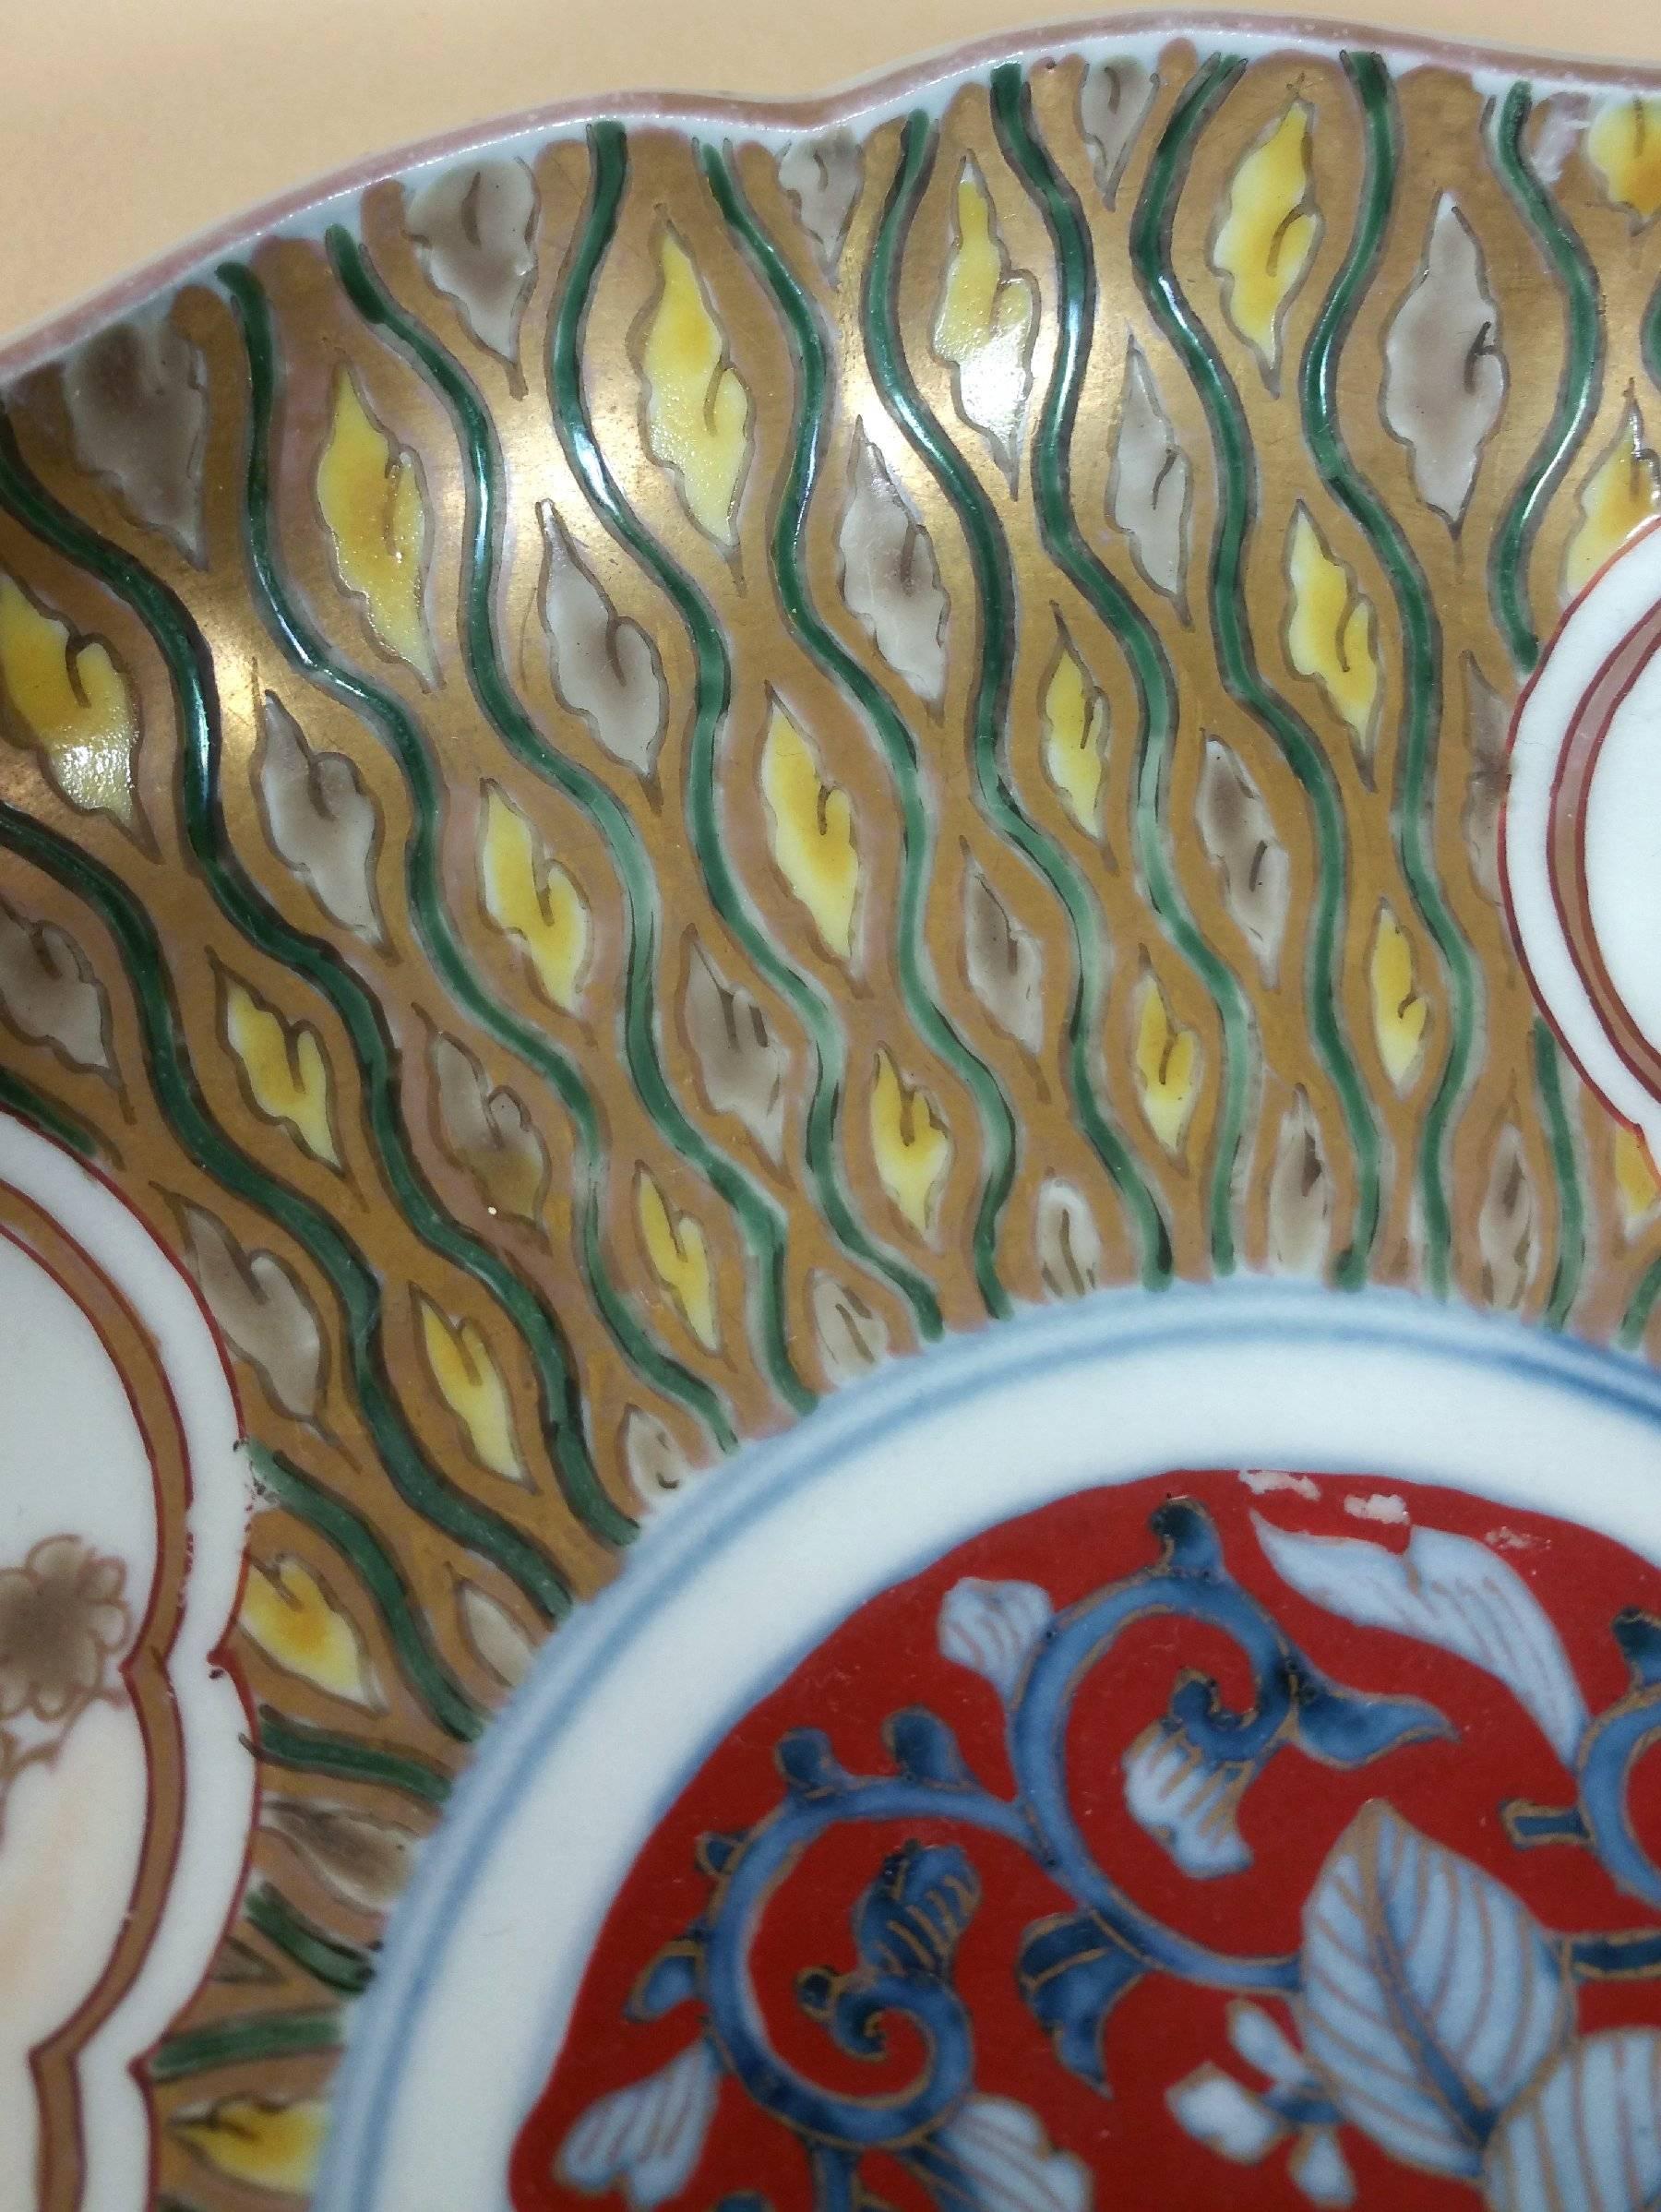 20th Century Fine Japanese Korancha Lobed Pottery Dish